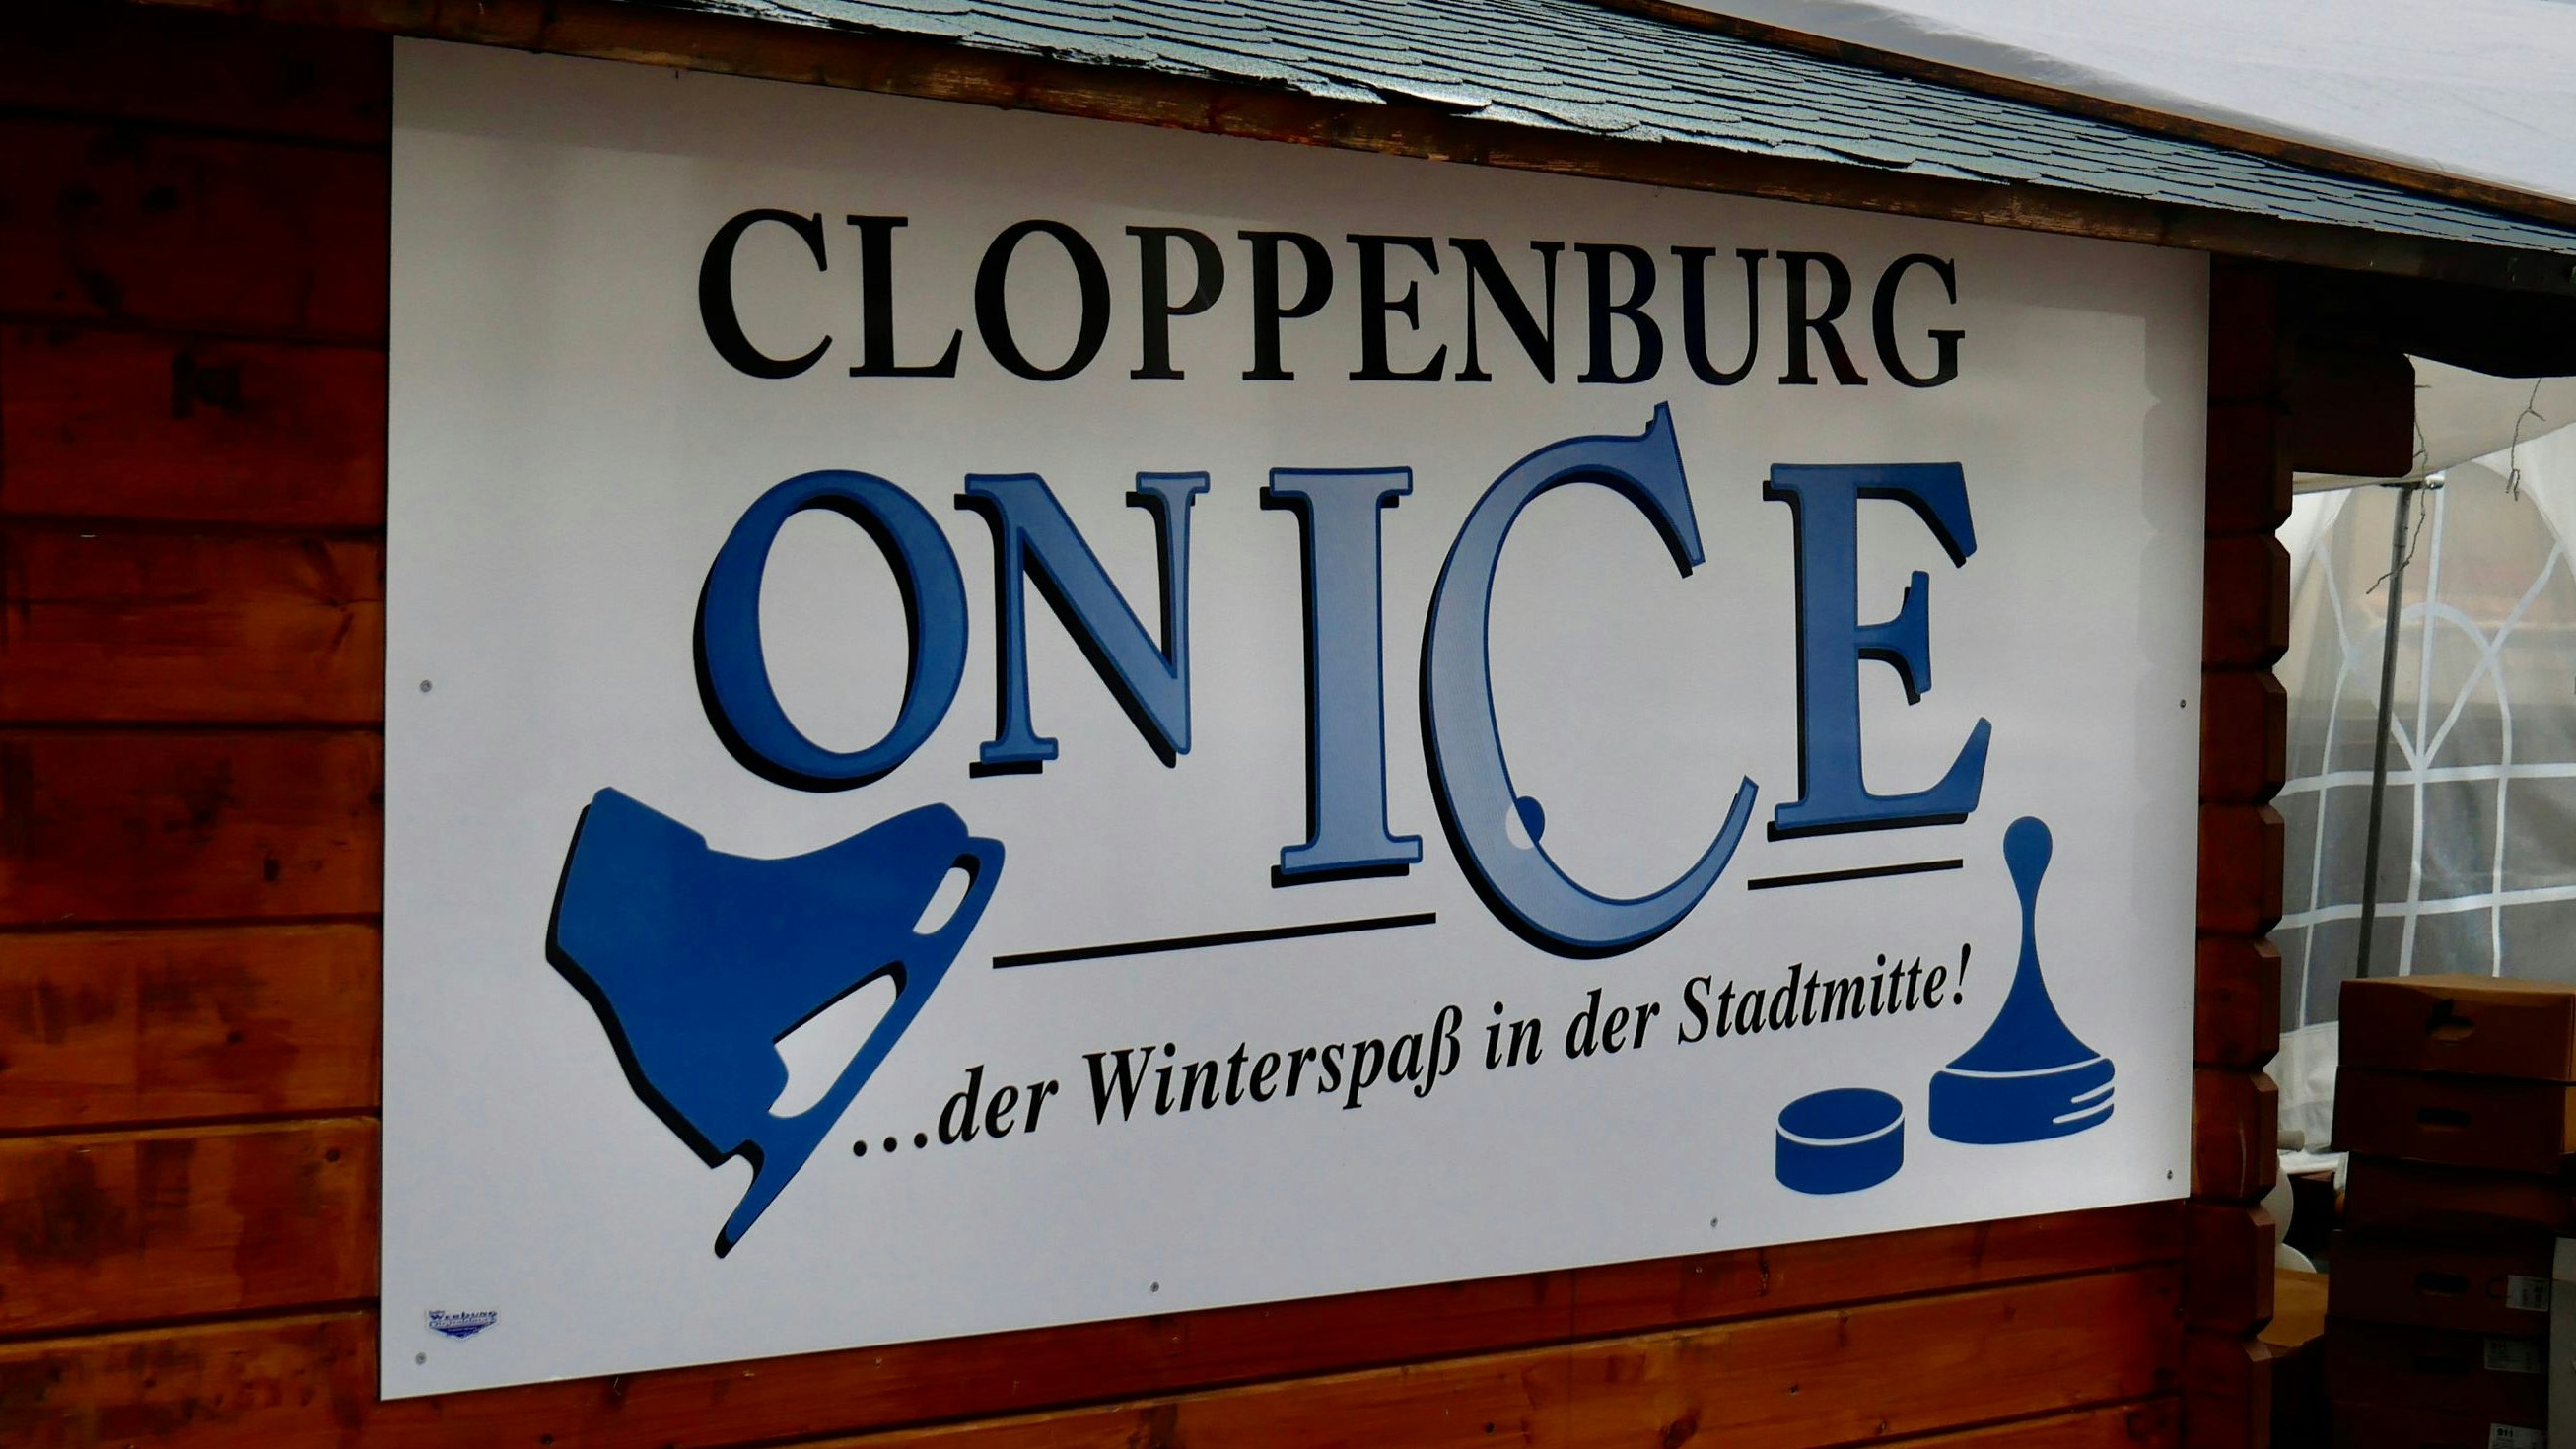 Nicht ganz korrekt: In diesem Winter ging es für die Cloppenburger nicht "on Ice", sondern auf Kunststoff. Foto: Dickerhoff